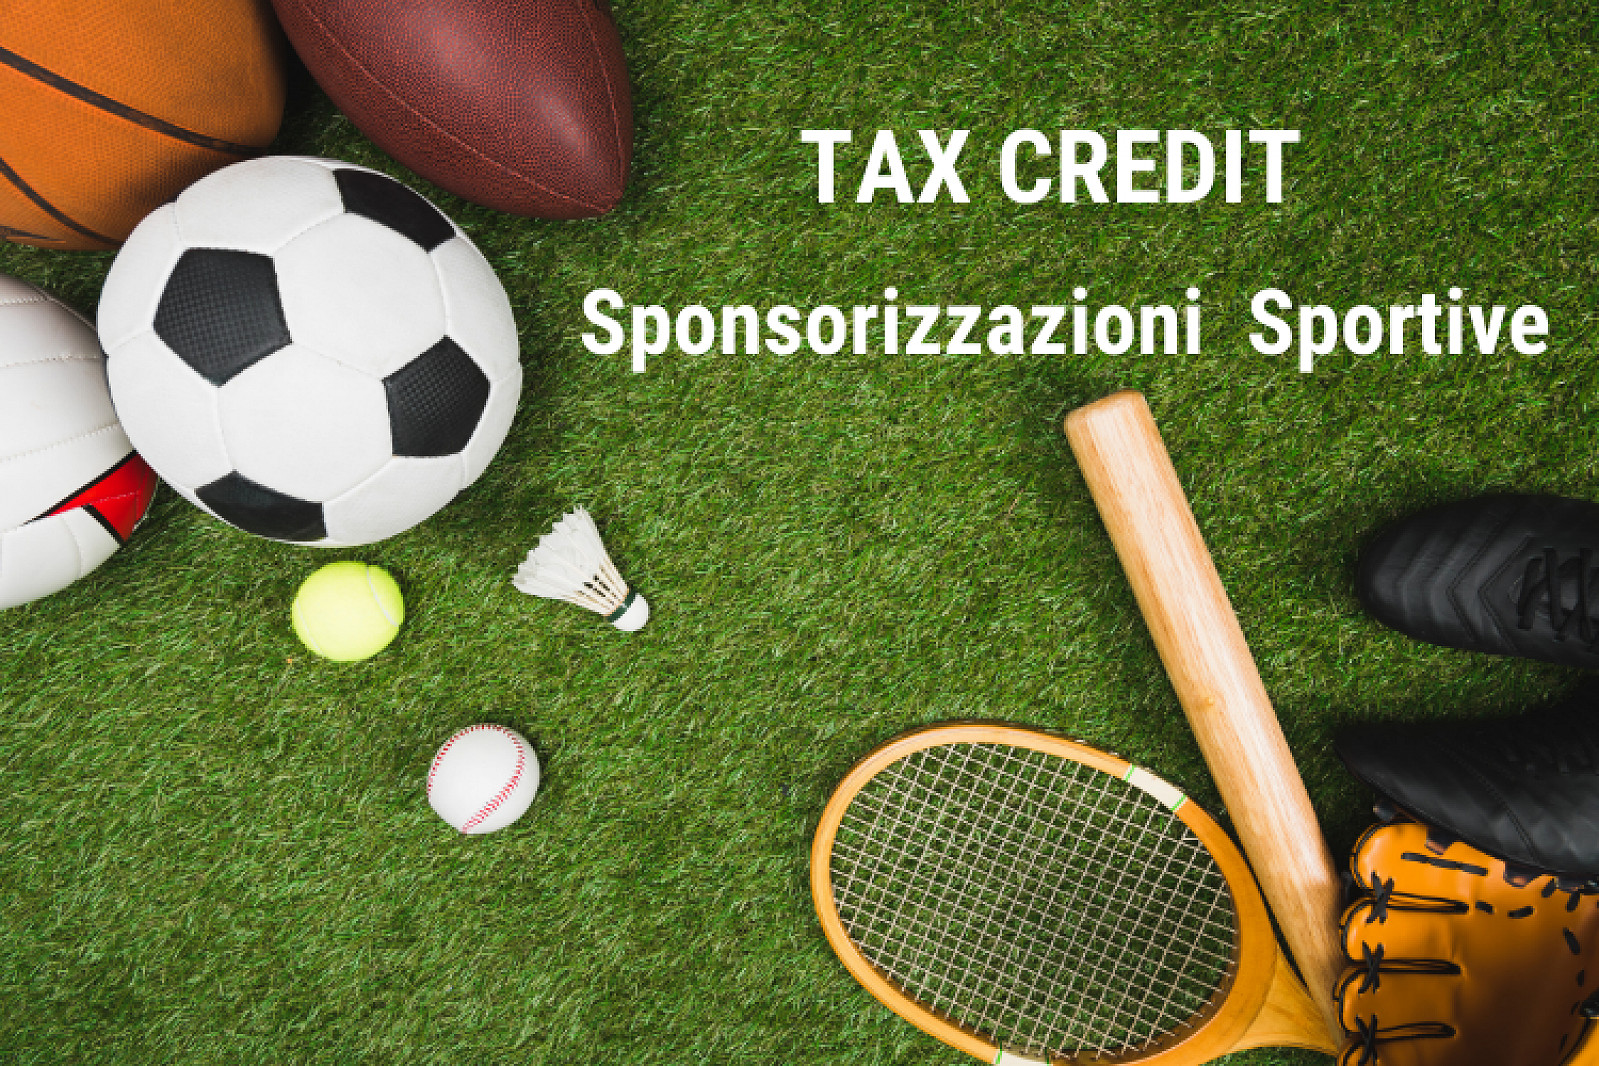 Tax credit sponsorizzazioni sportive: da febbraio le istanze